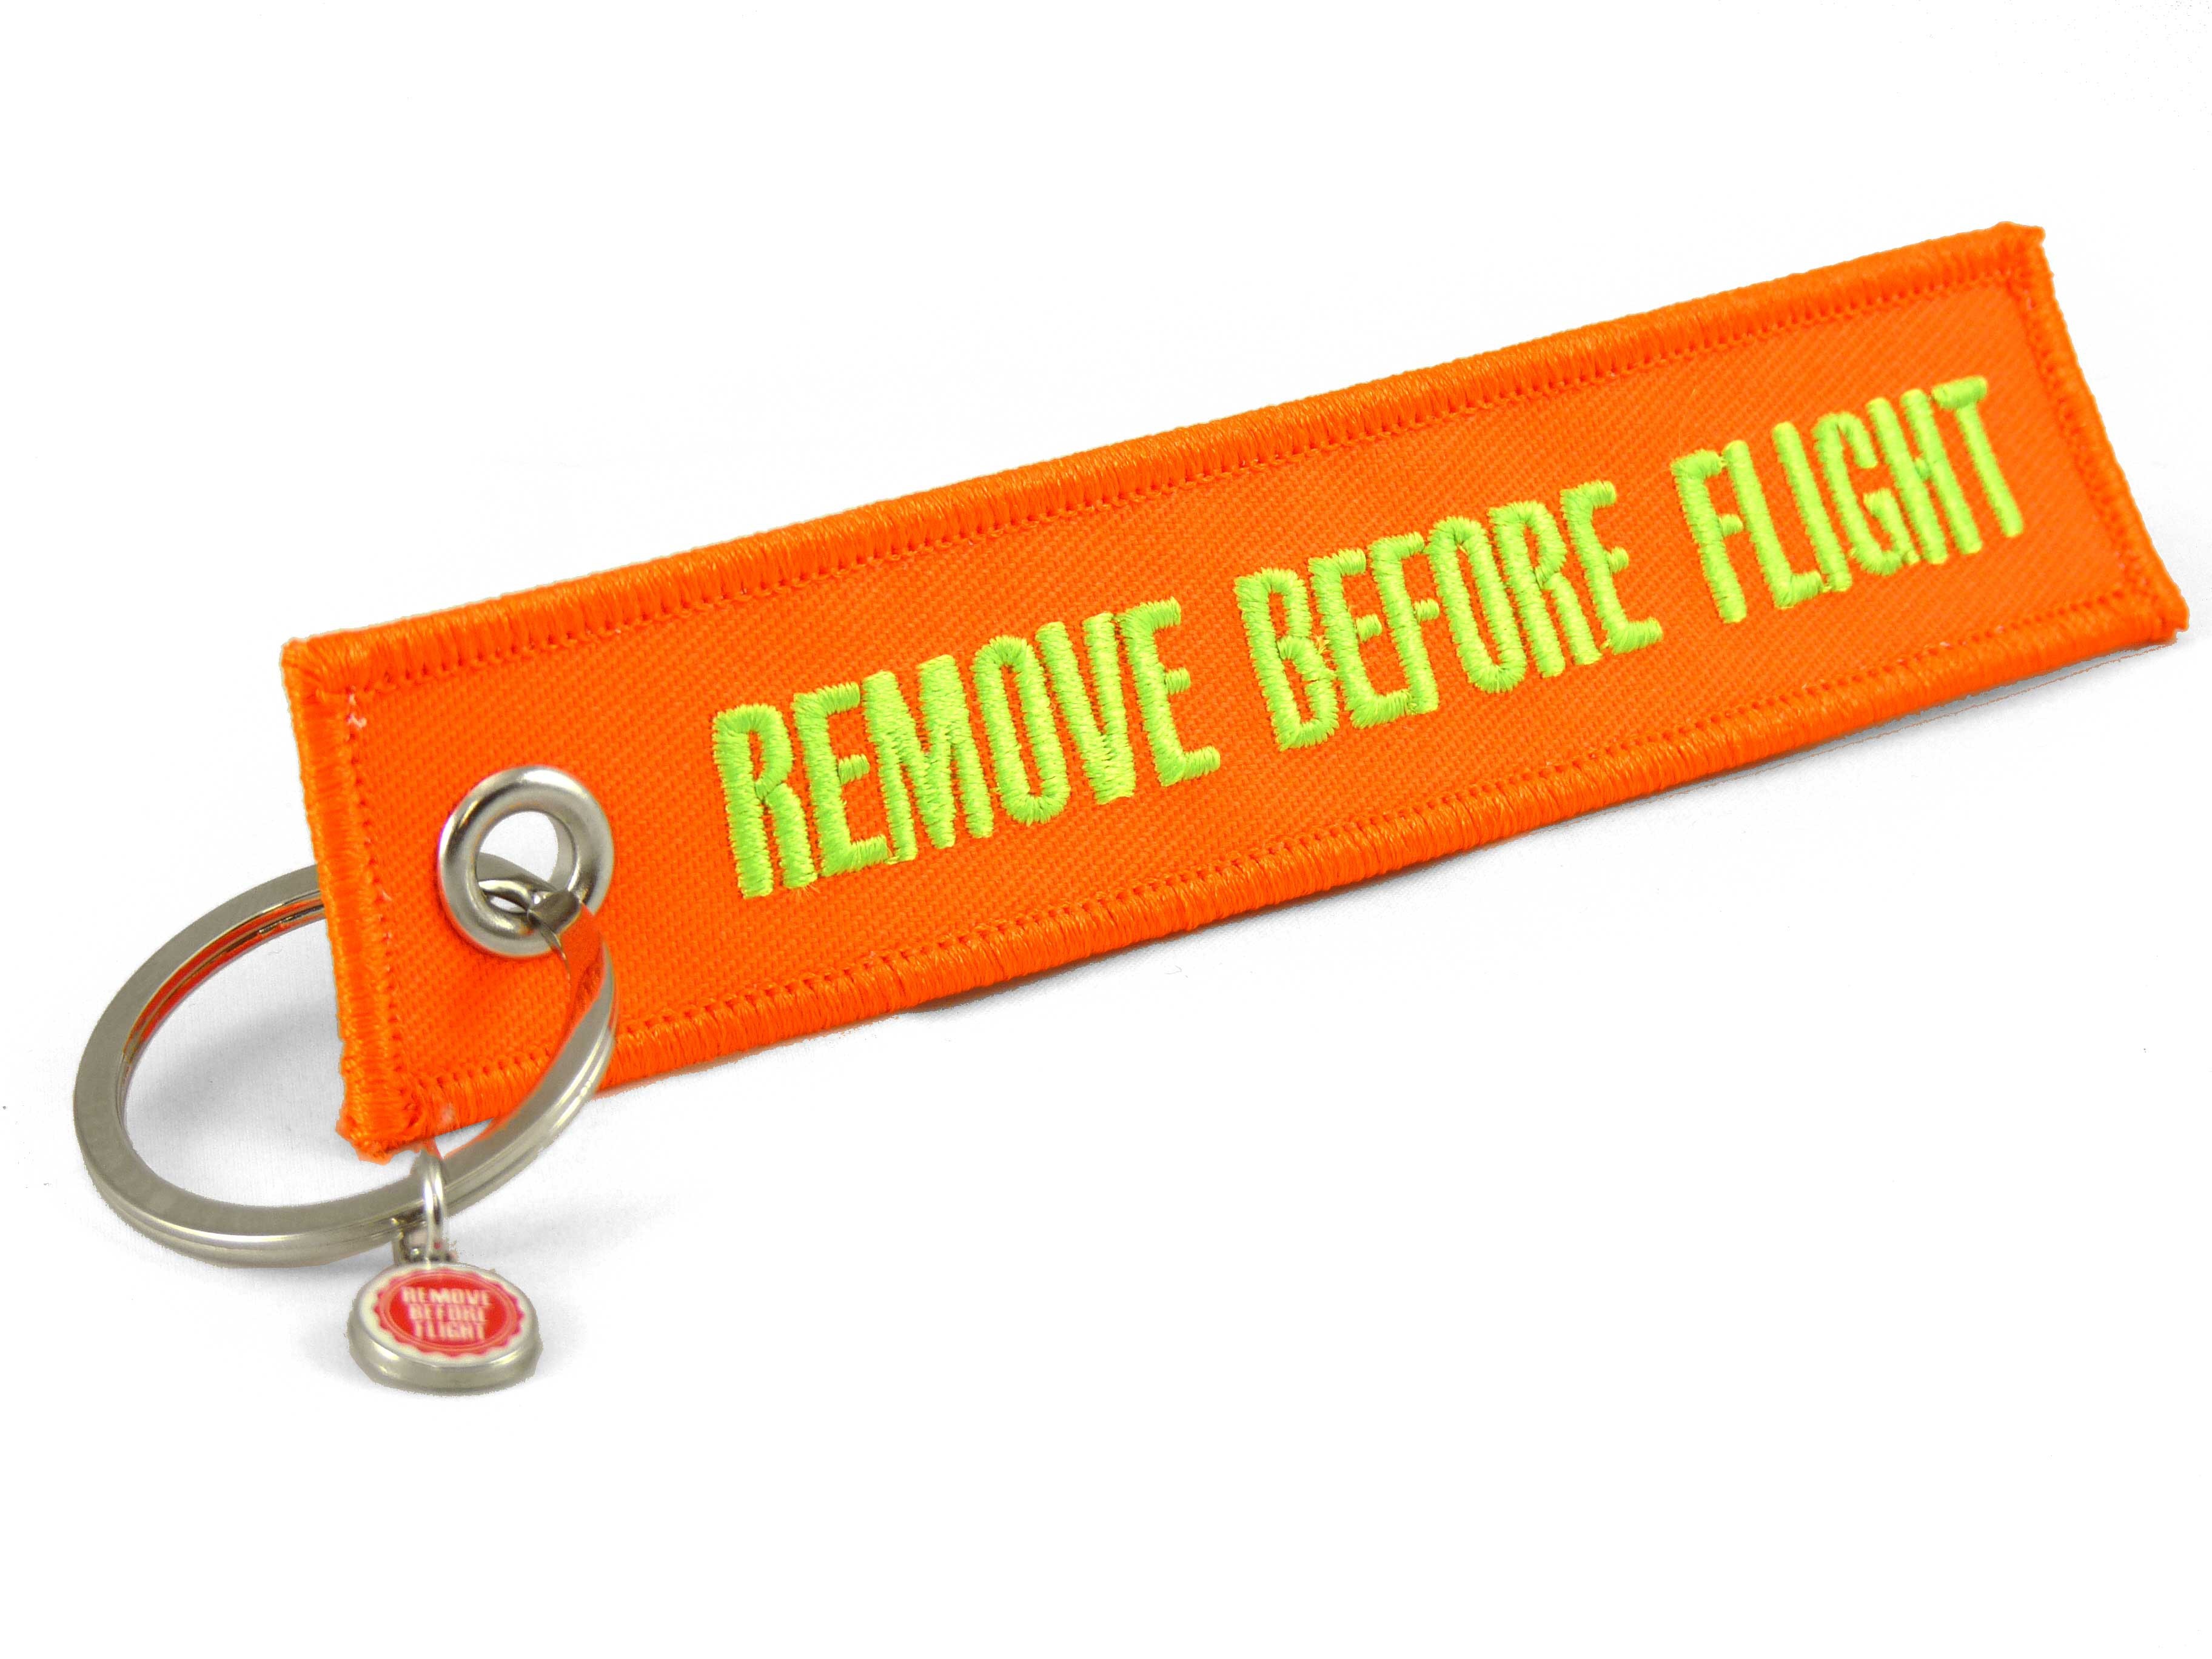 Porte-clés remove before flight La fée Pas-chier